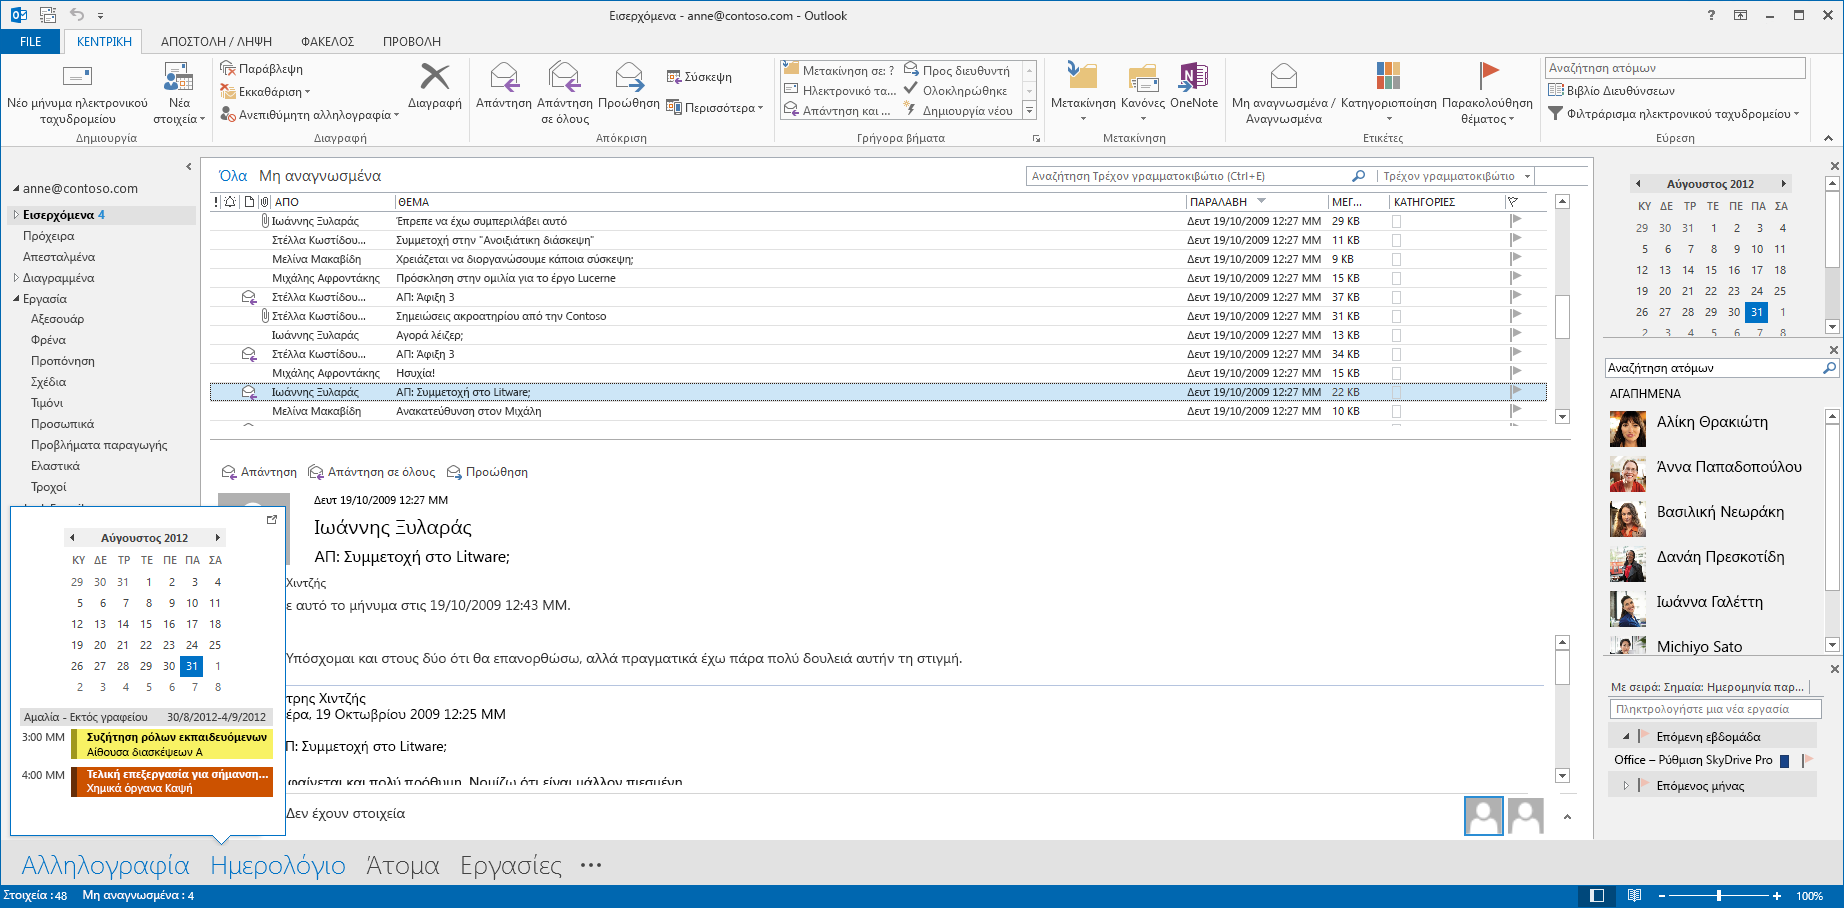 Οδηγός γρήγορης εκκίνησης Το Microsoft Outlook 2013 έχει διαφορετική εμφάνιση από προηγούμενες εκδόσεις. Δημιουργήσαμε, λοιπόν, αυτόν τον οδηγό για να ελαχιστοποιήσουμε την καμπύλη εκμάθησης.